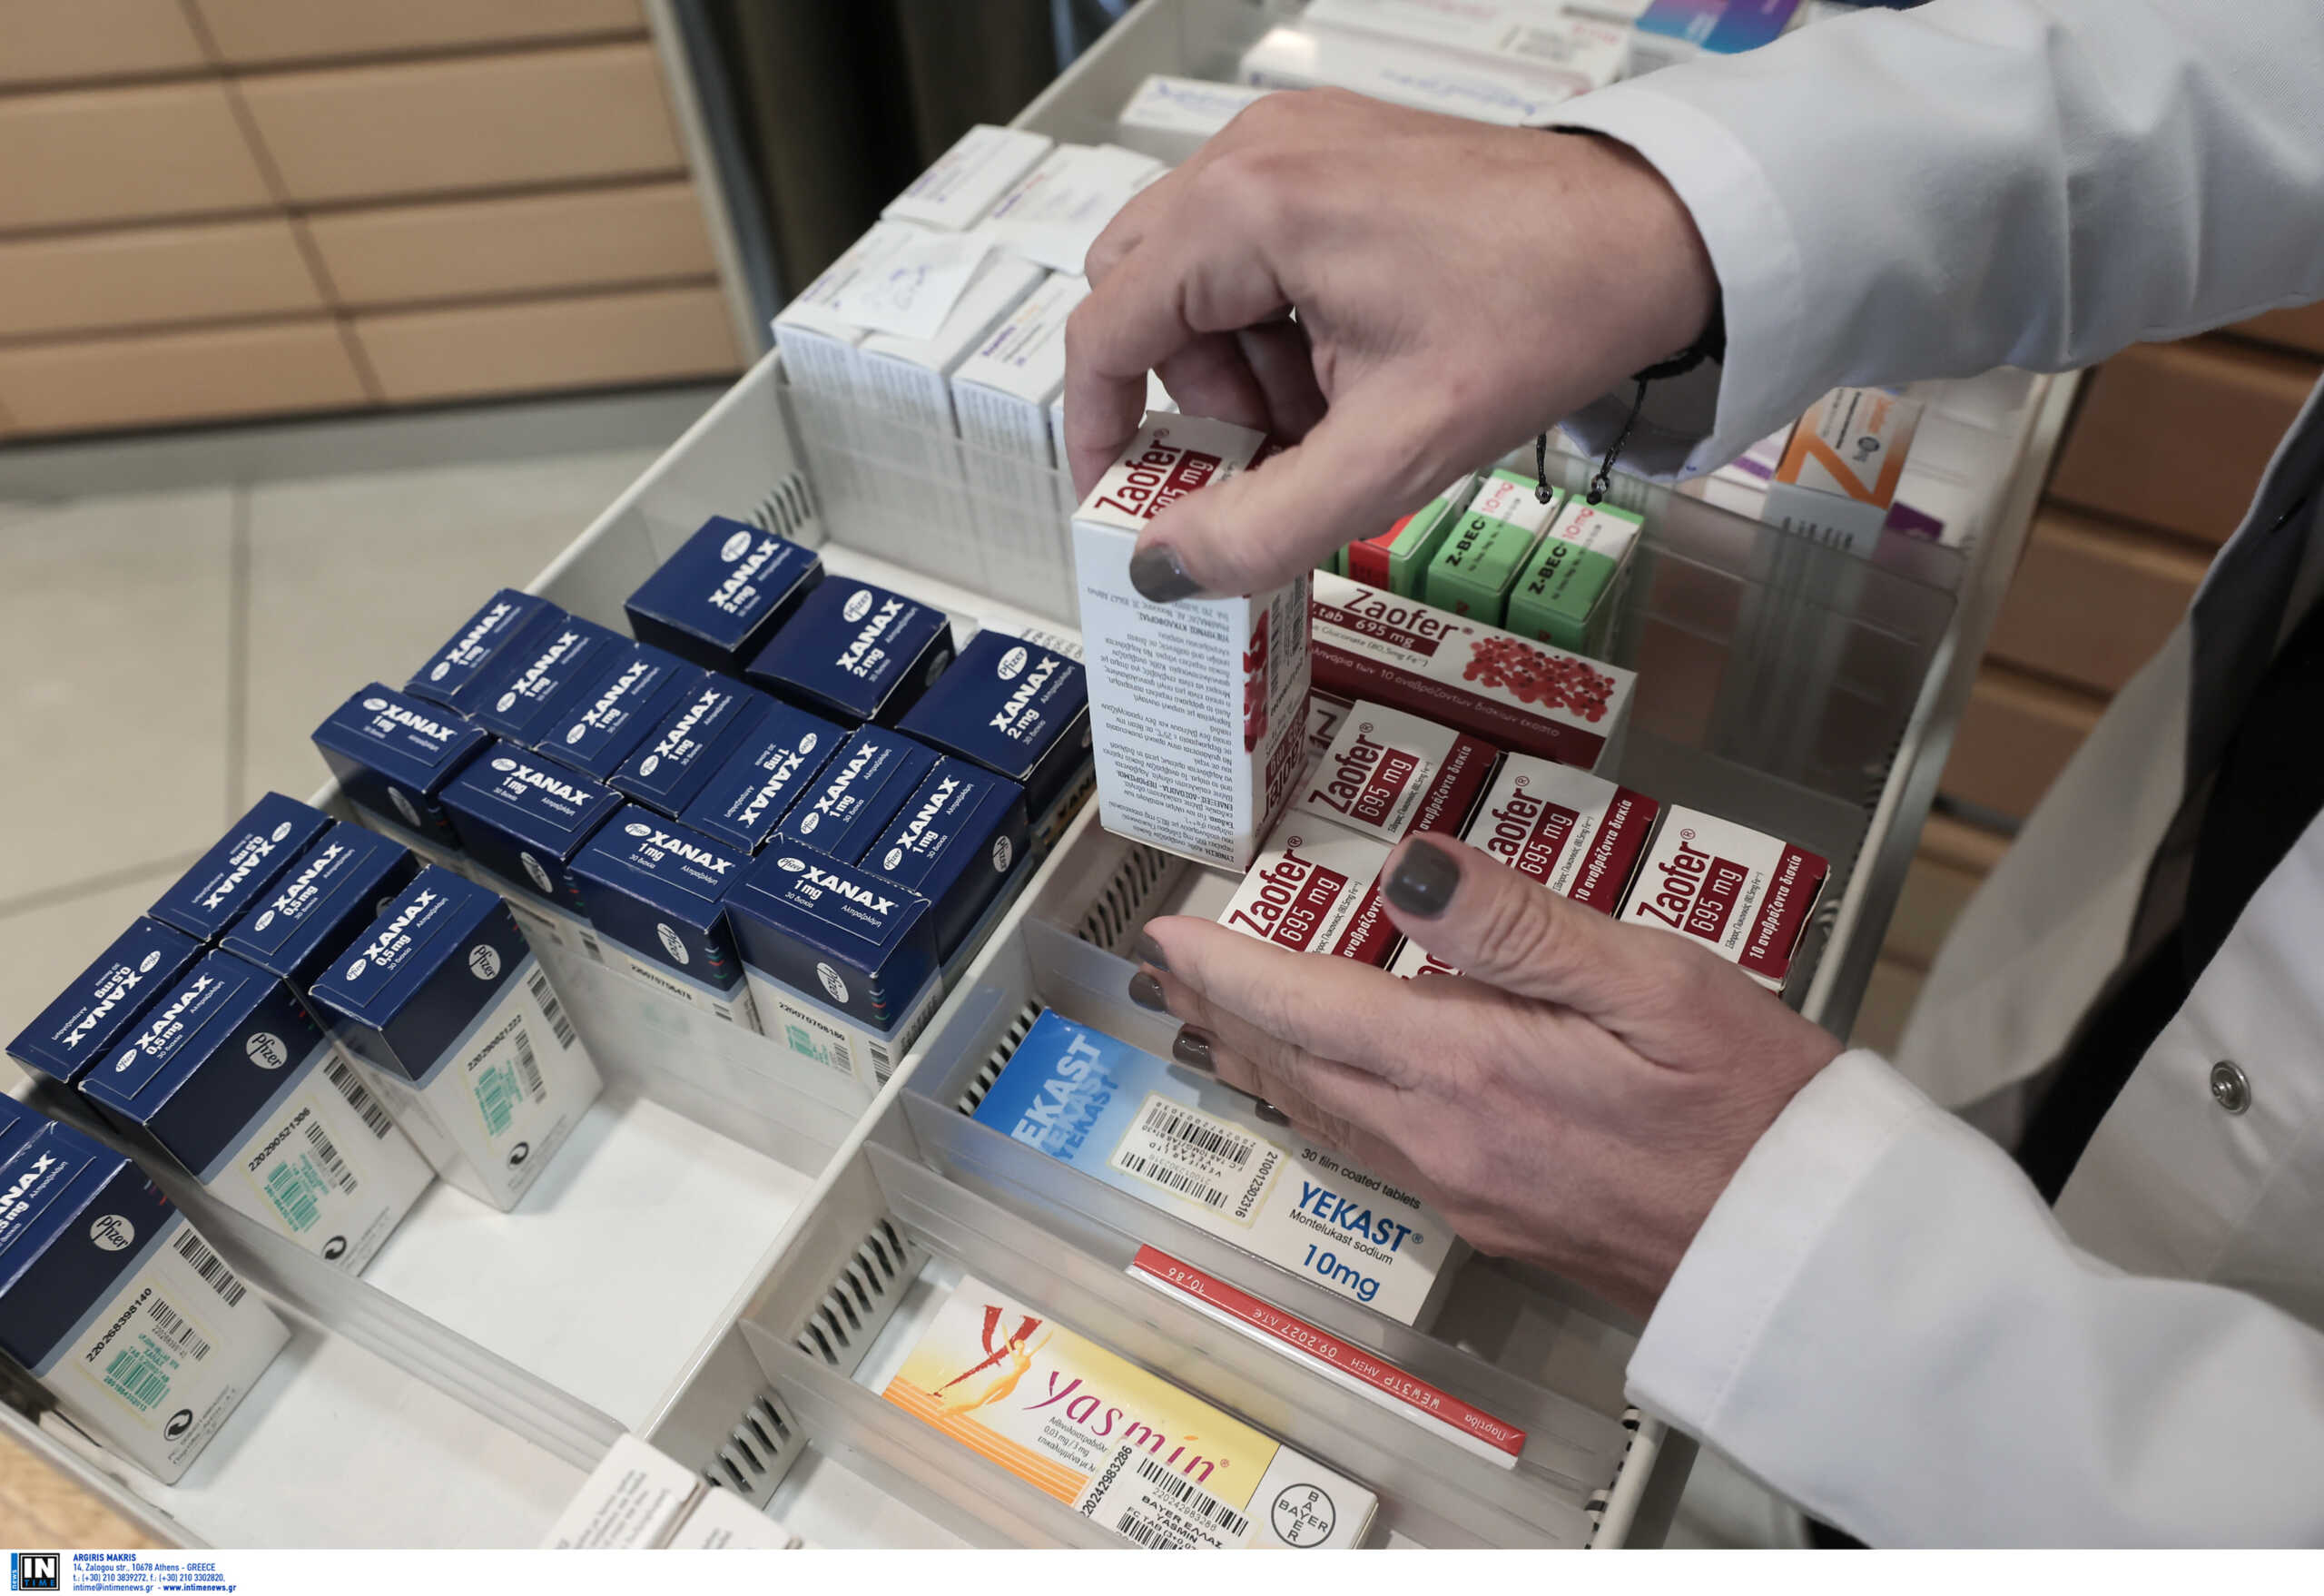 Ελλείψεις φαρμάκων: Ικανοποιημένοι οι φαρμακοποιοί για τις απαγορεύσεις του ΕΟΦ στις εξαγωγές 120 σκευασμάτων